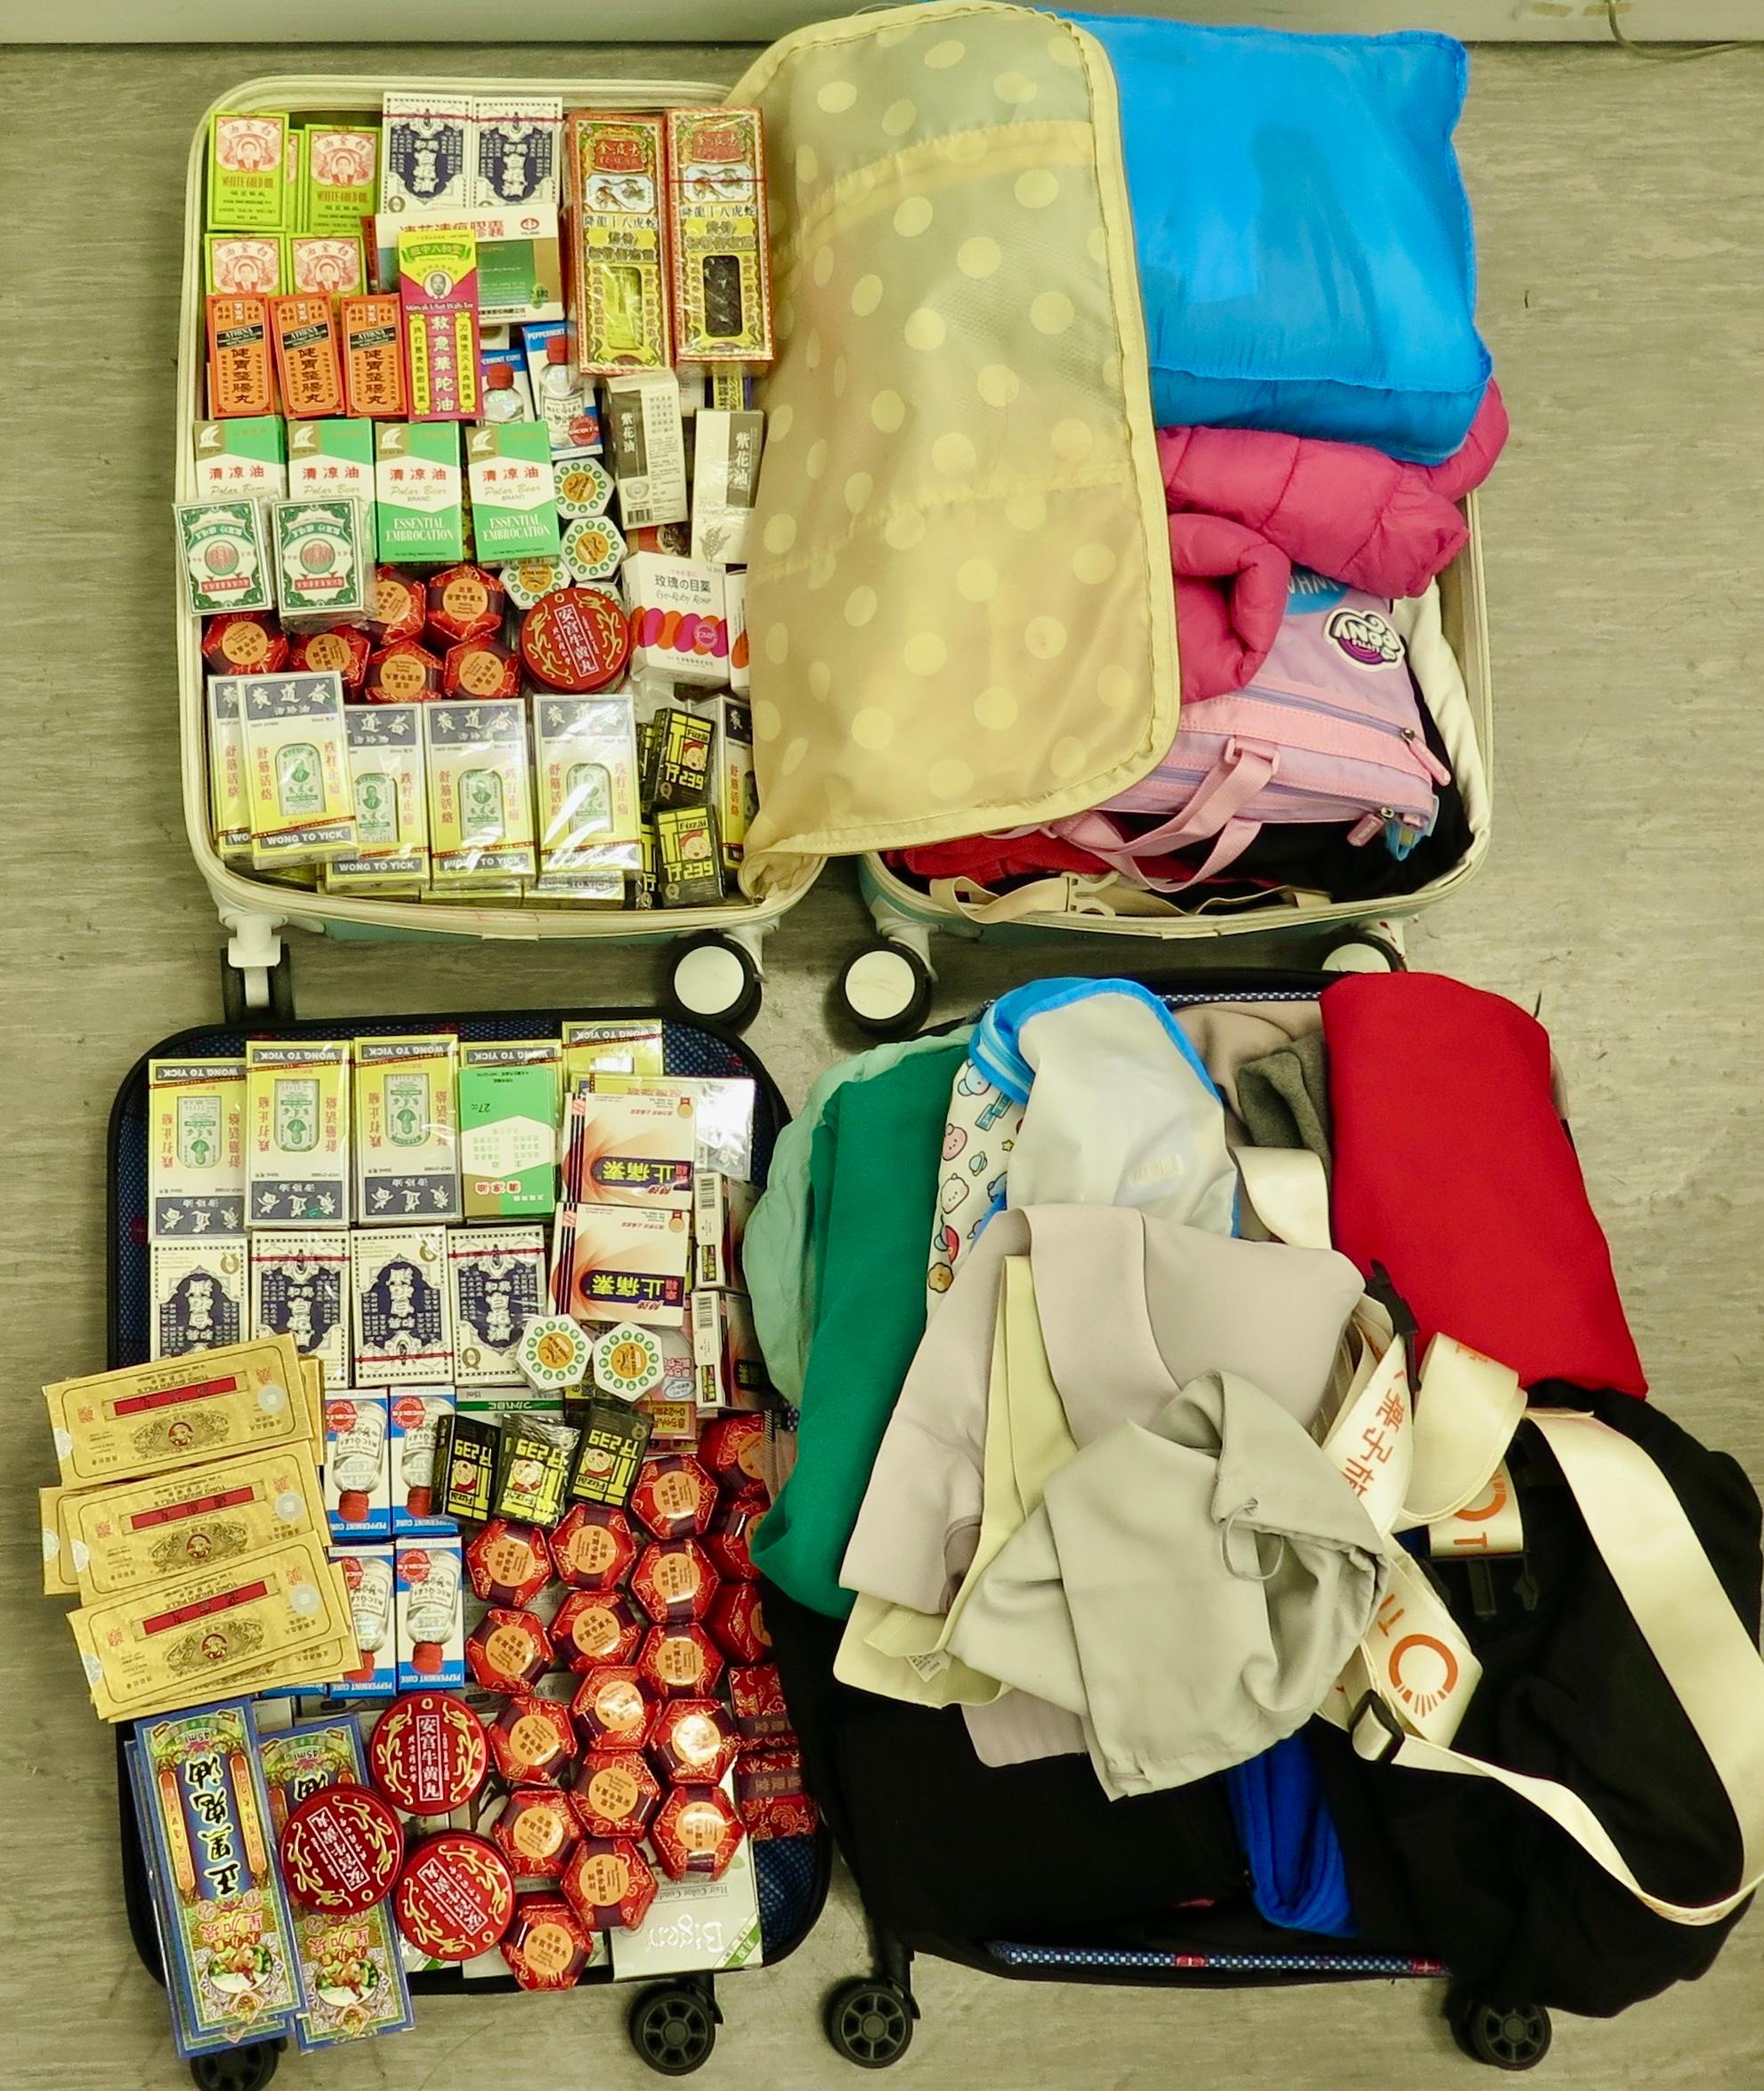 香港海關一月九日和昨日（一月十一日）在香港國際機場偵破四宗懷疑走私藥物案件，檢獲超過一萬二千粒、約四千三百八十八毫升和約一百八十六克懷疑受管制藥物，估計市值共約五十四萬元。圖示海關人員於一名出境女旅客的手提行李中檢獲的懷疑受管制藥物，包括含撲熱息痛成分的止痛退燒藥、藥油和眼藥水。